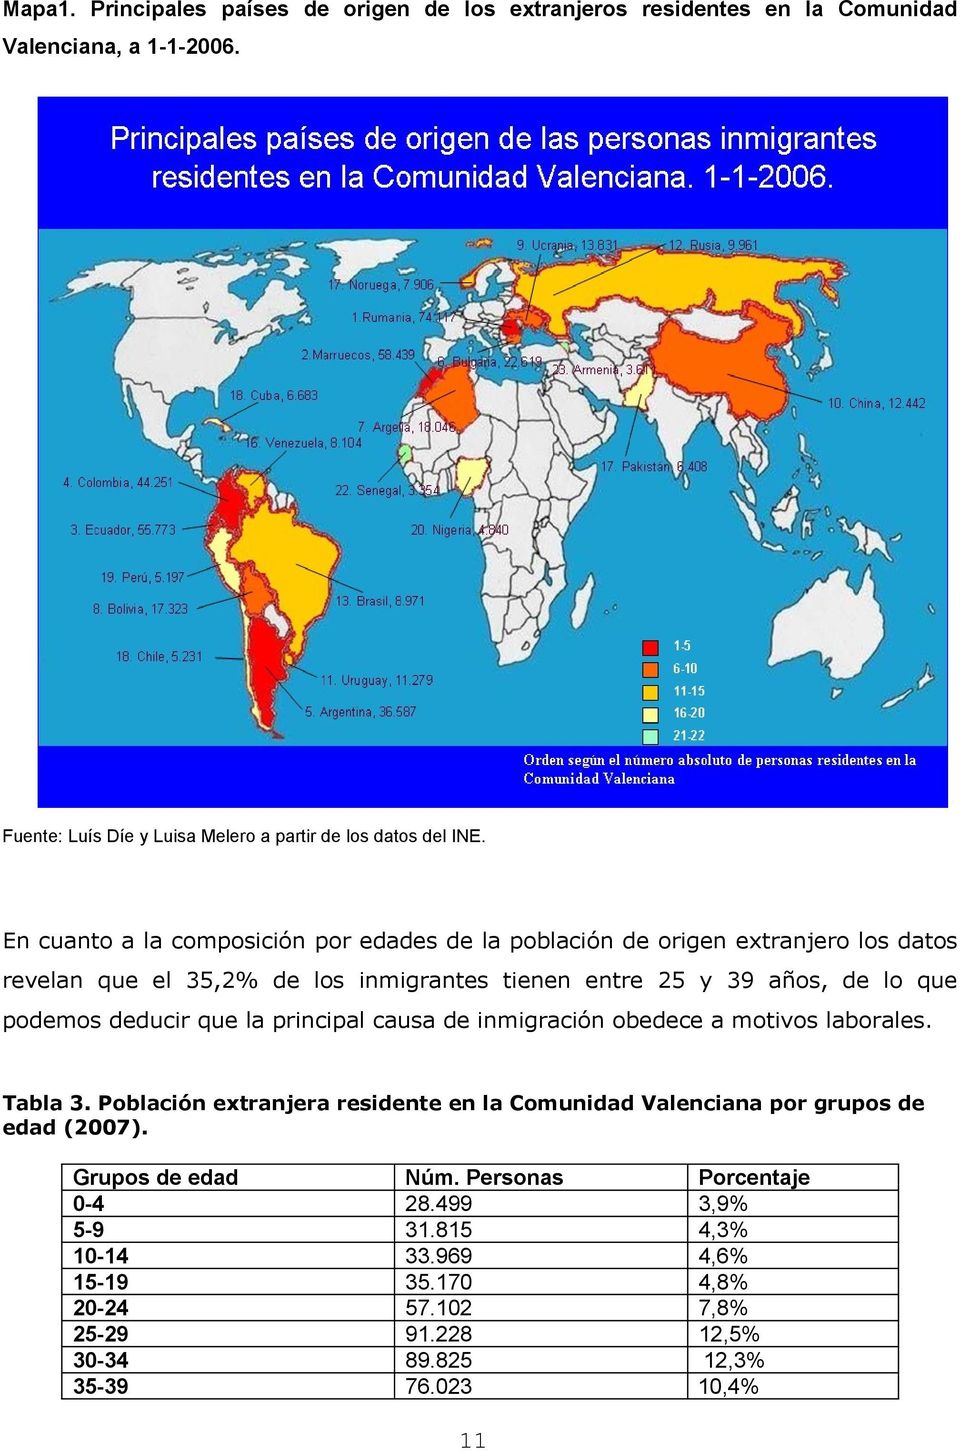 deducir que la principal causa de inmigración obedece a motivos laborales. Tabla 3. Población extranjera residente en la Comunidad Valenciana por grupos de edad (2007).